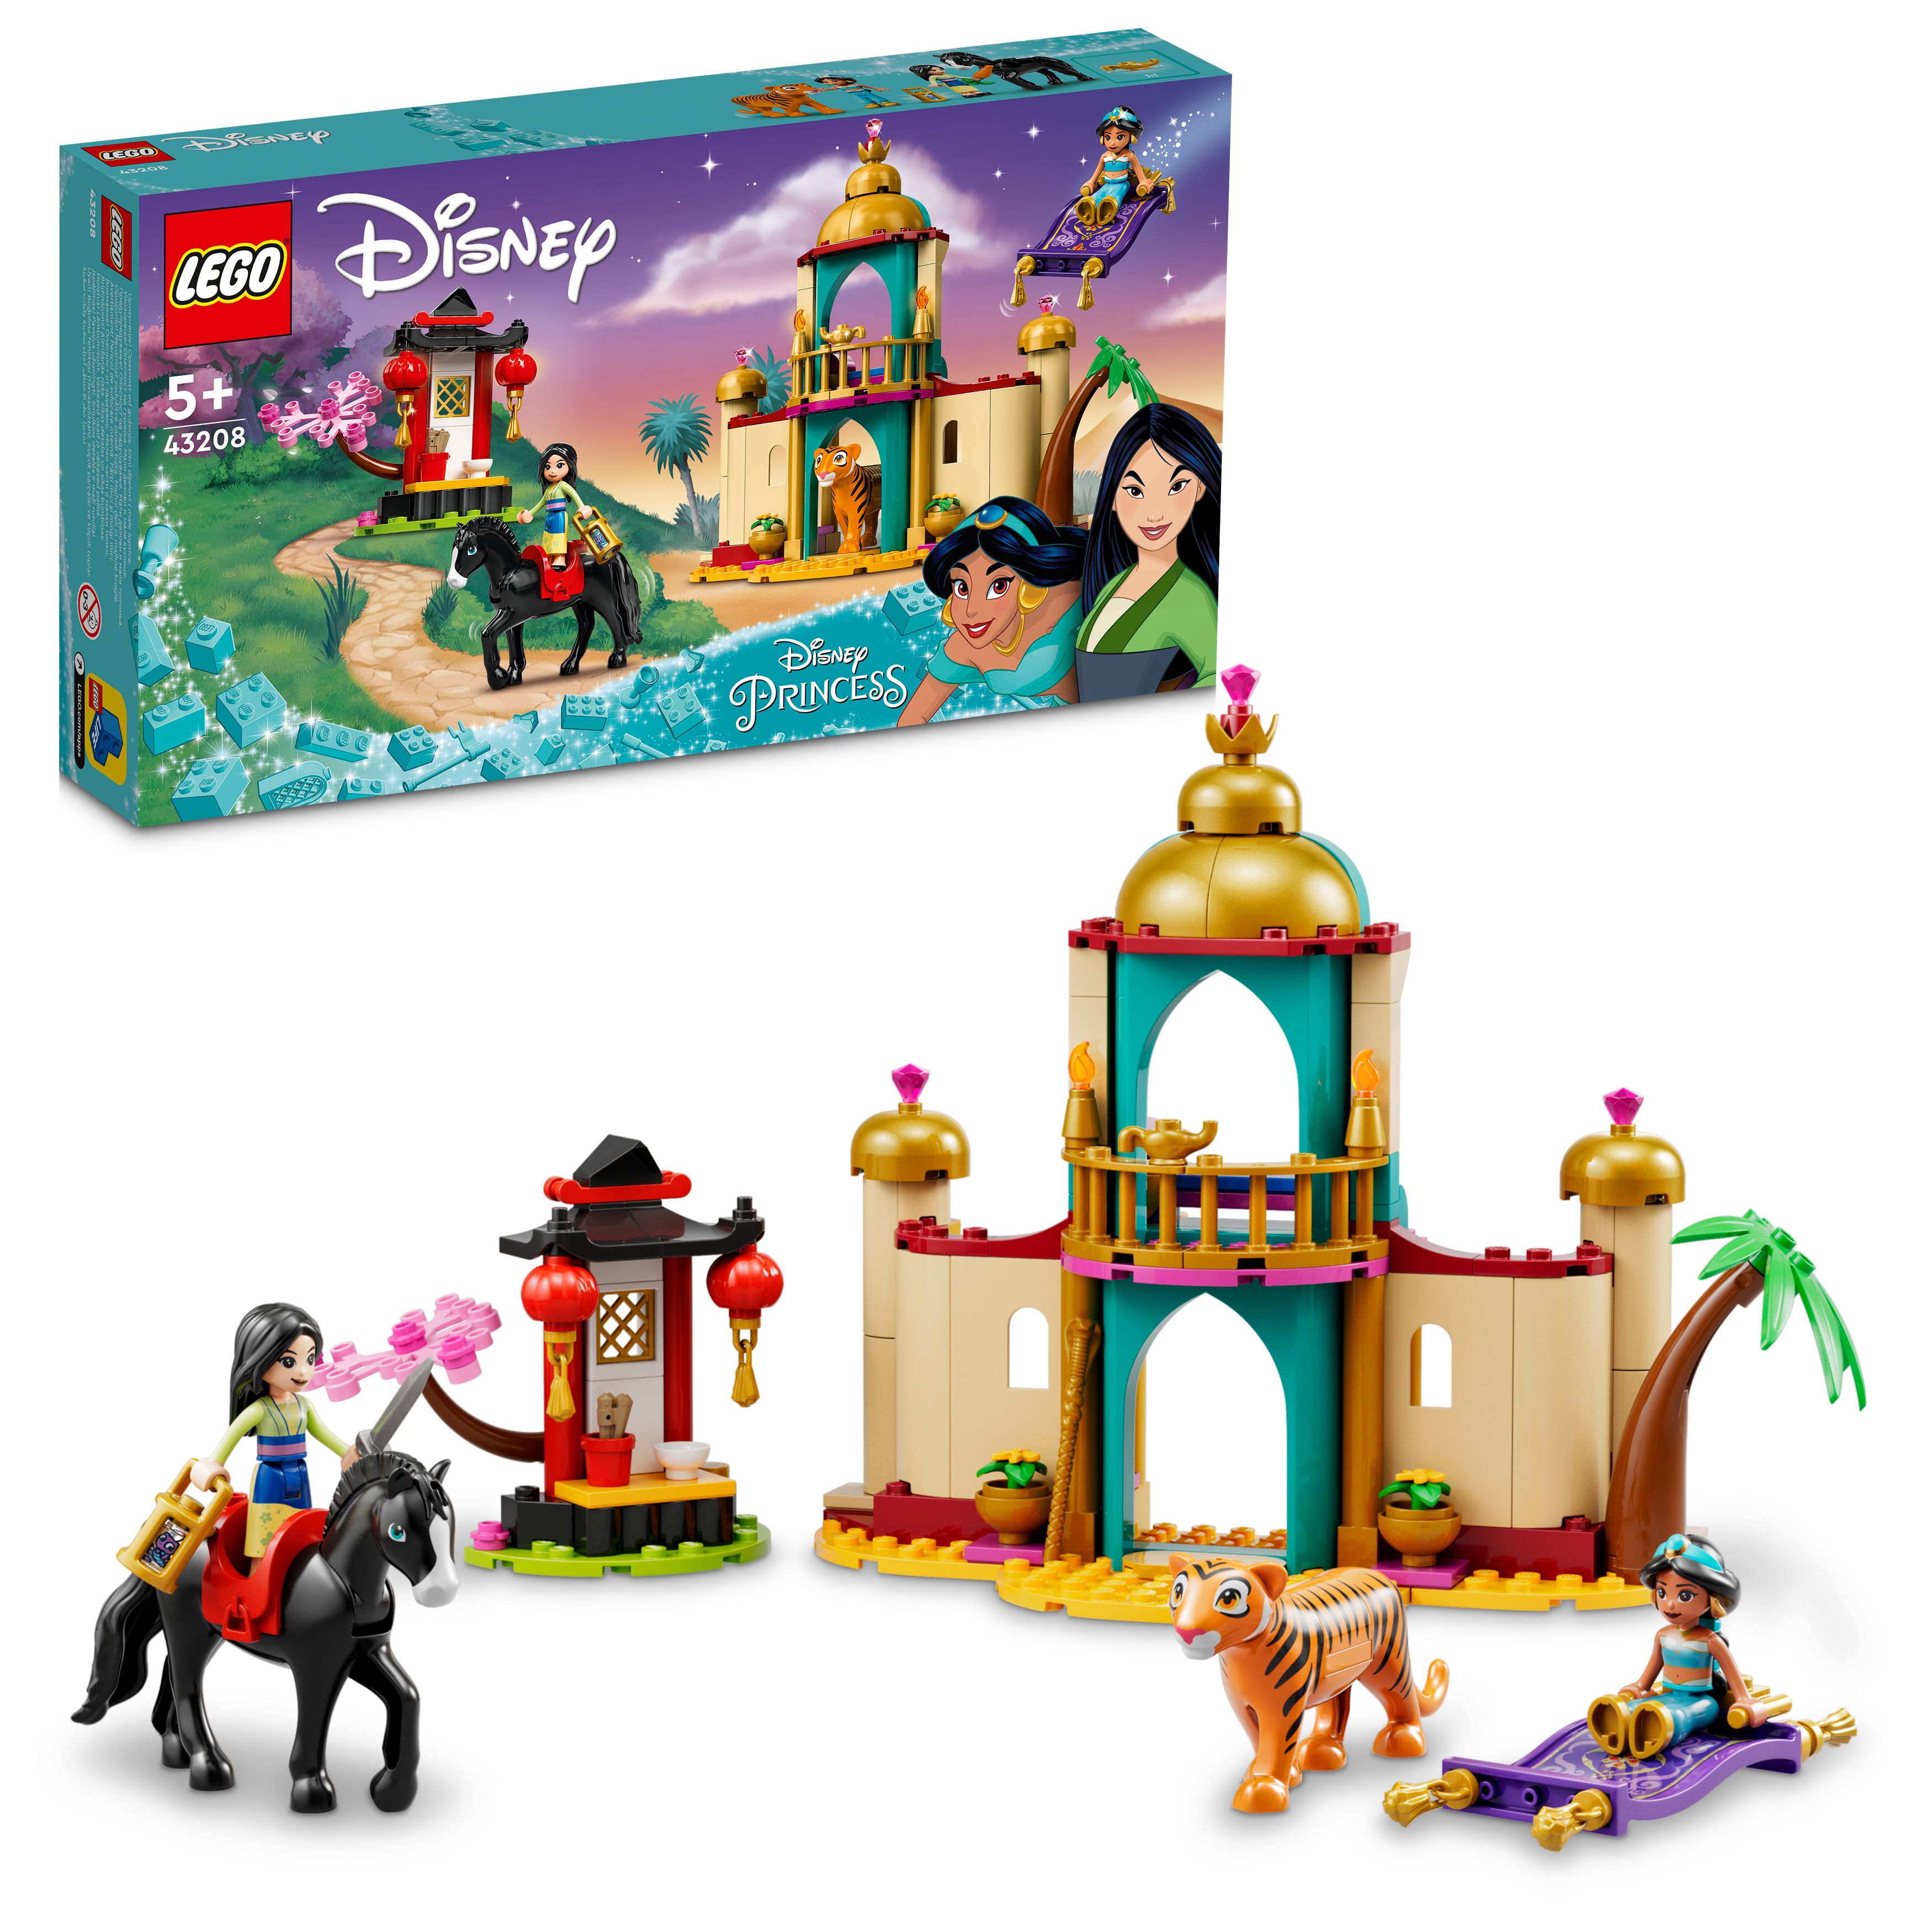 LEGO Disney Prinsesse - Sjasmin og Mulans eventyr (43208) - Leker